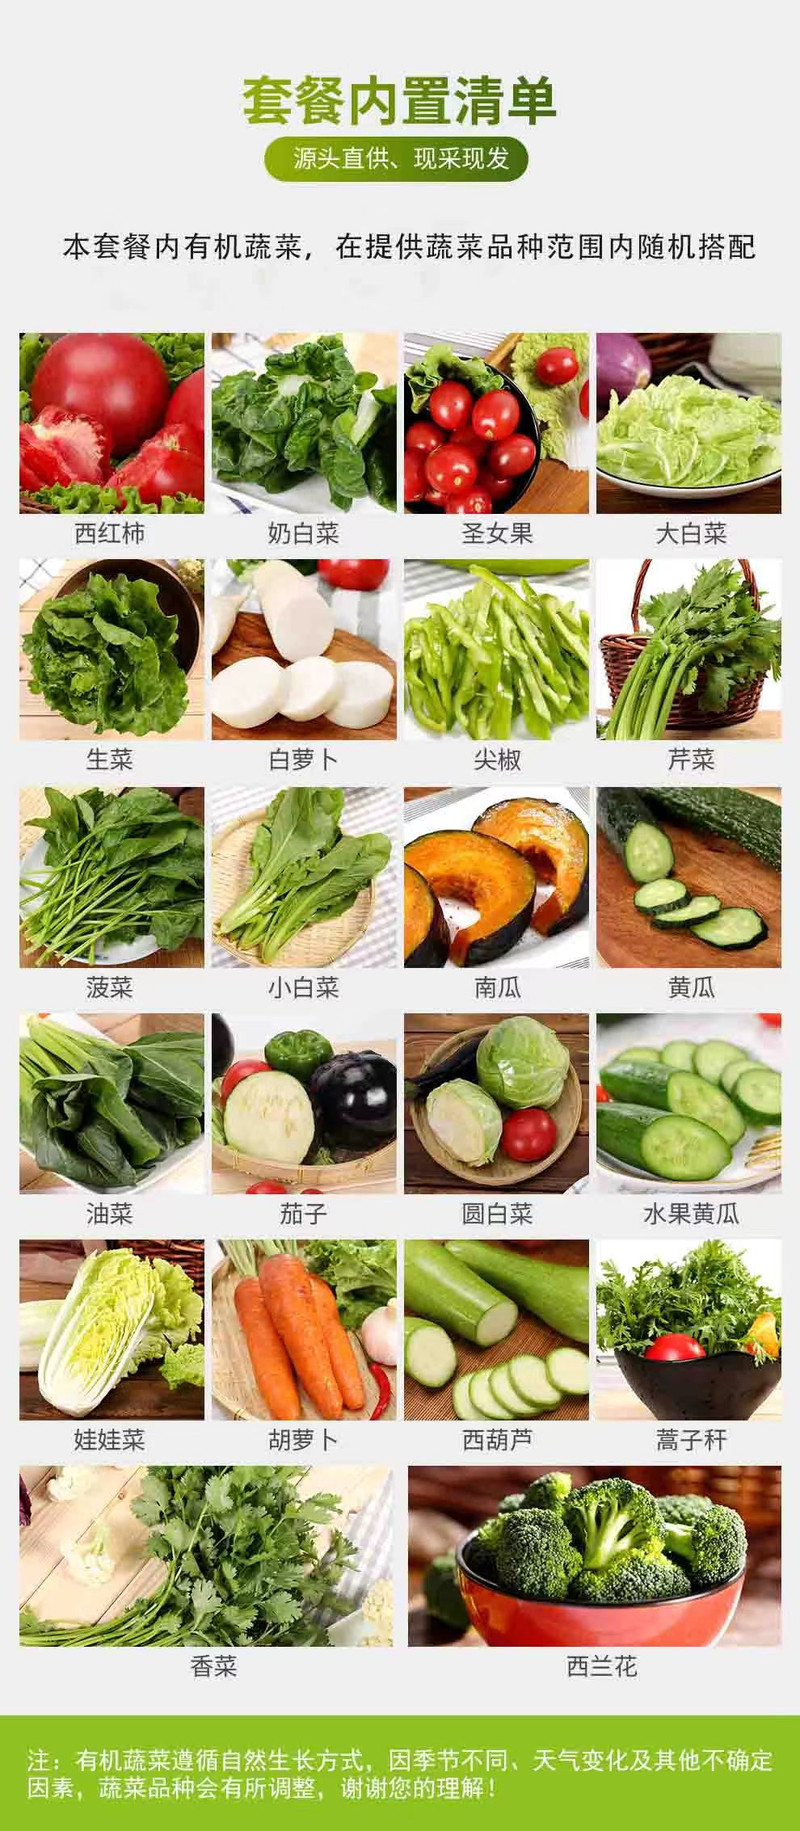 邮政农品 【北京优农】延庆北菜园有机蔬菜礼盒约5kg